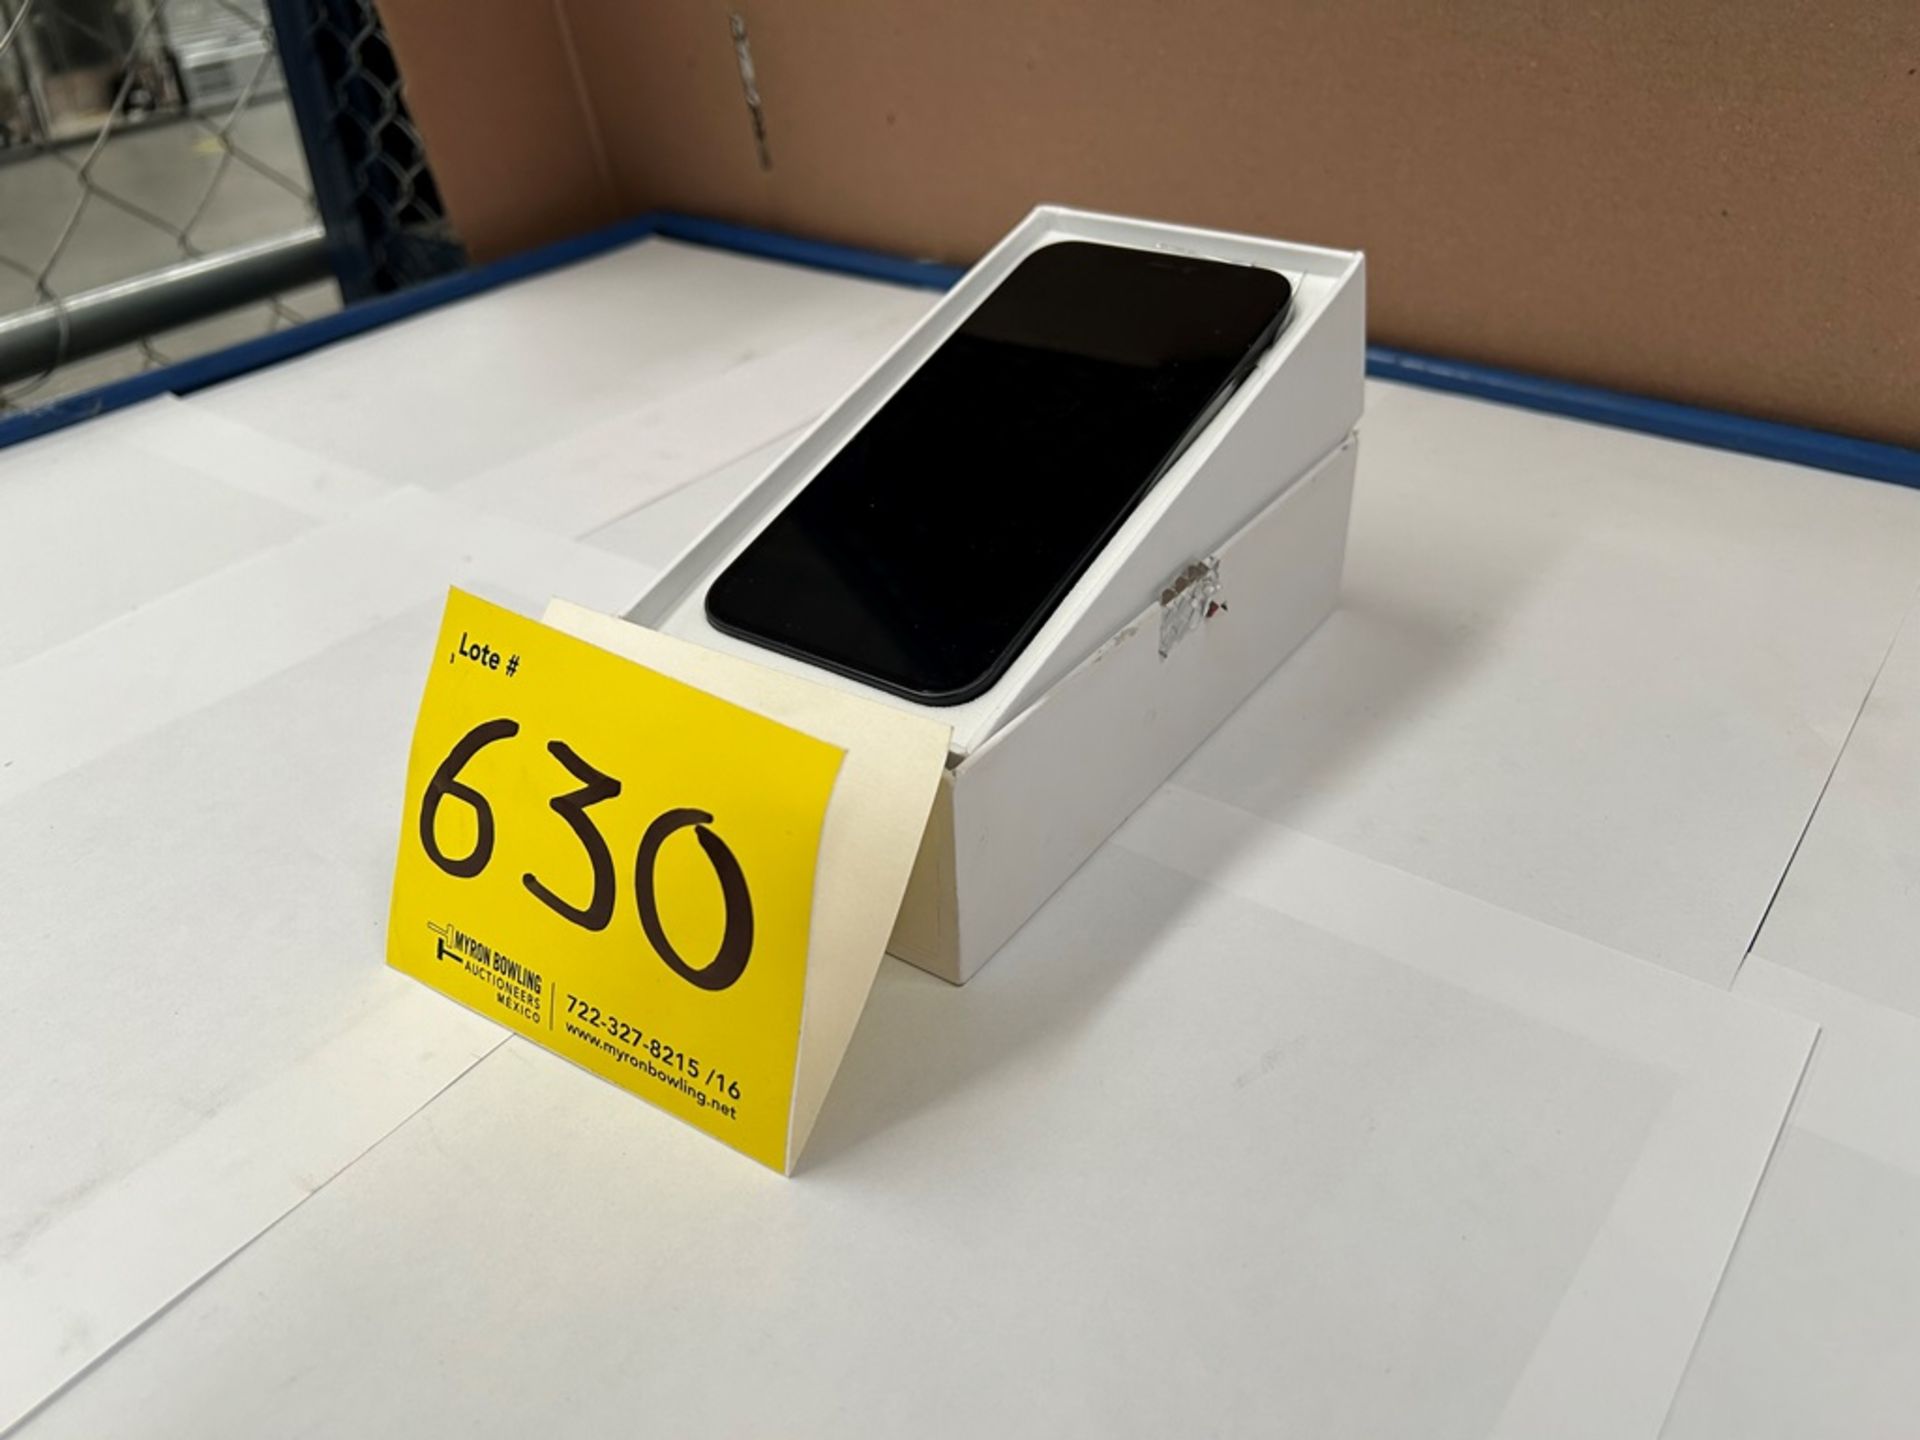 Celular Marca APPLE, Modelo iPhone 12, de 128 GB, Color NEGRO (IMEI 35304113781275) (Equipo de devo - Image 2 of 6